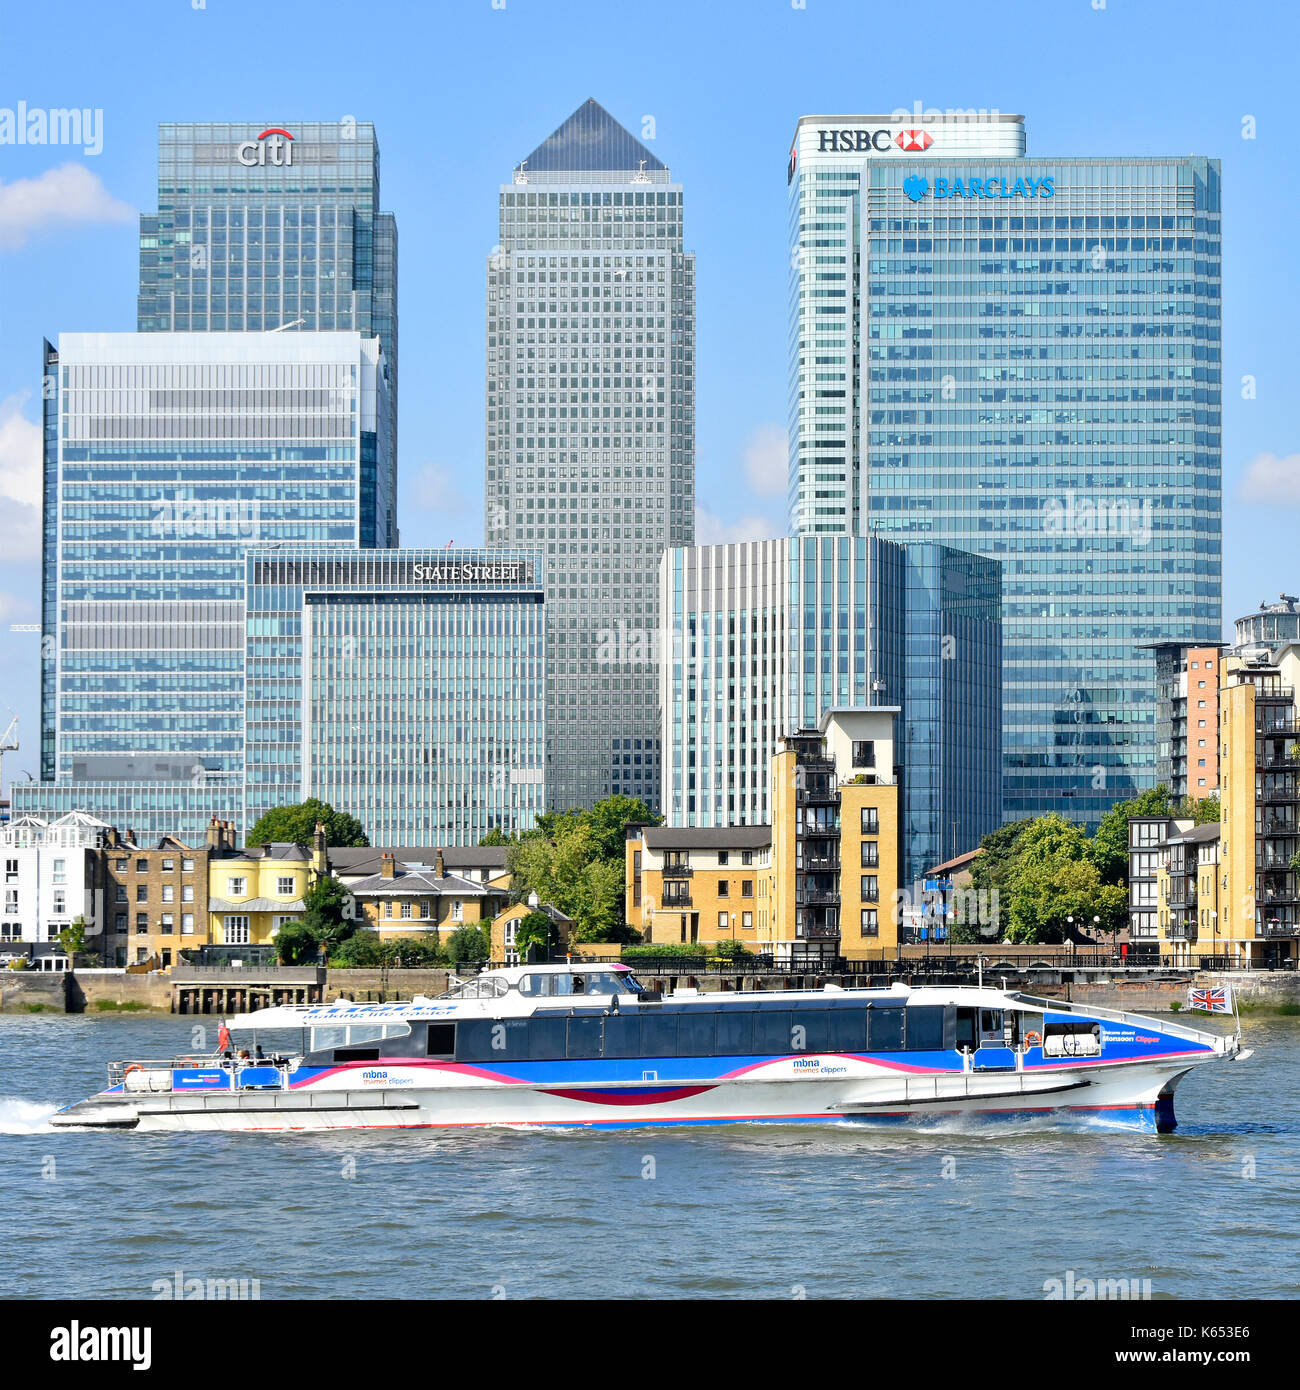 Thames Clipper high speed Fluss-BUS-Dienst übergibt London Docklands Canary Wharf Skyline von Banking HQ moderne Wolkenkratzer Gebäude am Ufer des Flusses Themse Stockfoto